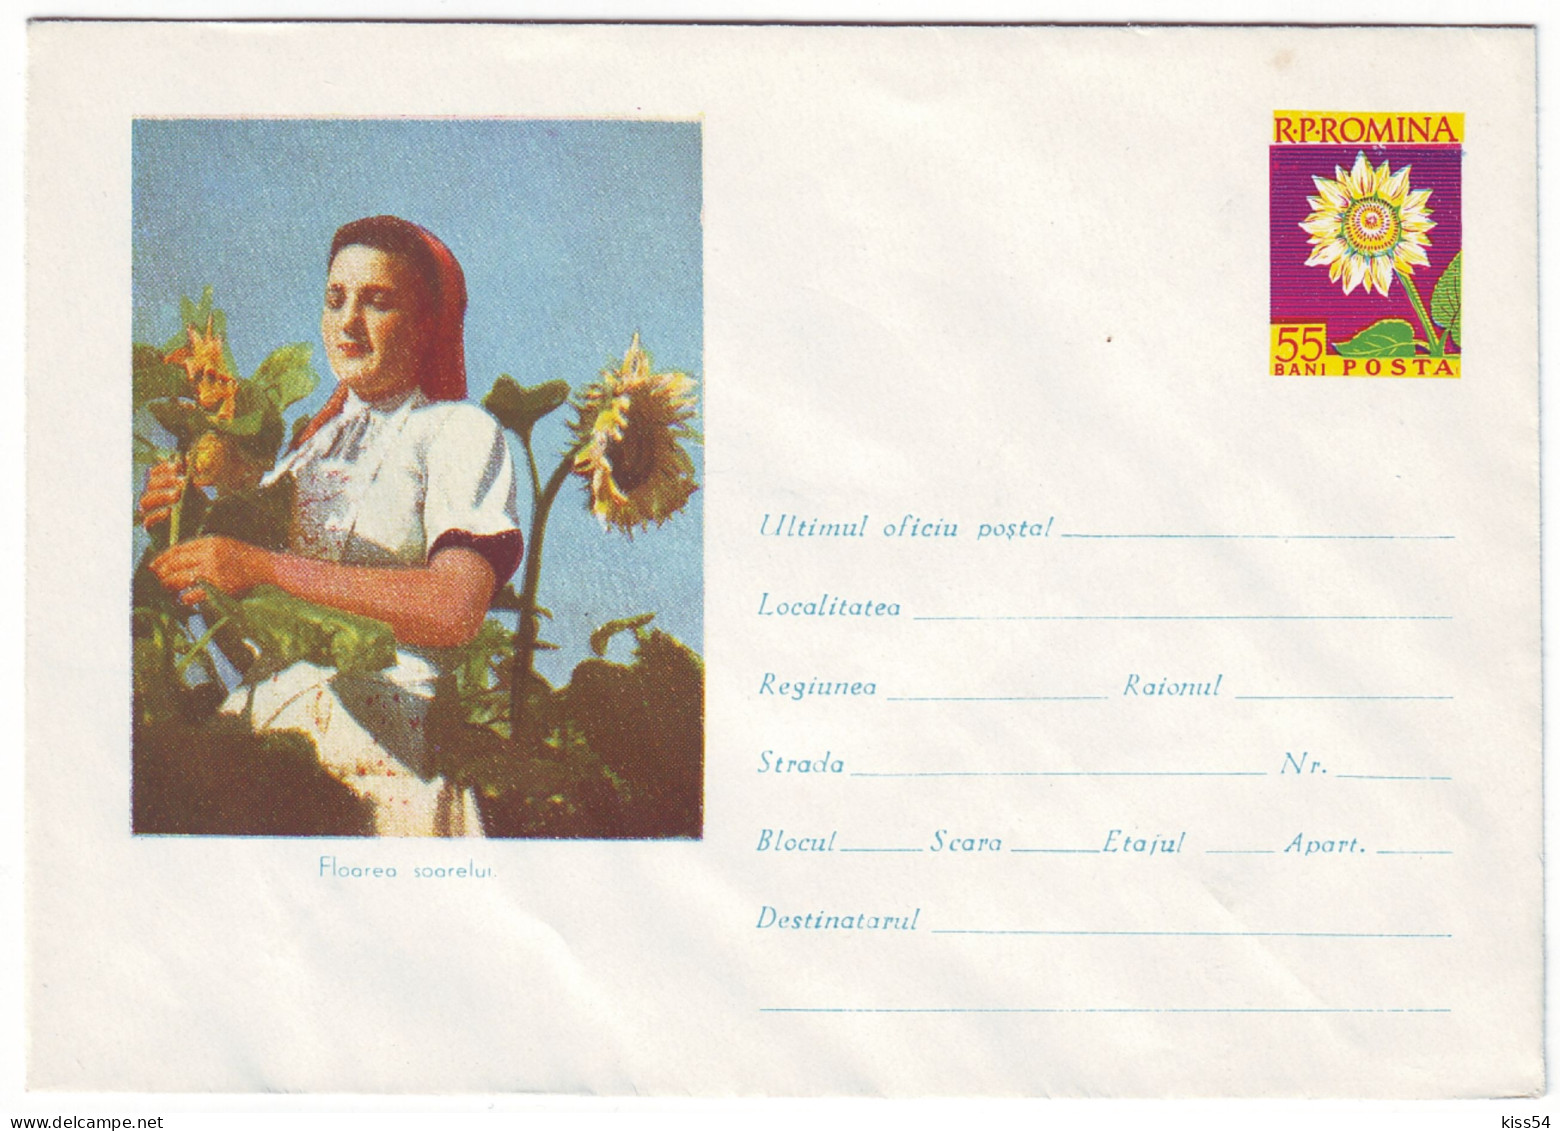 IP 61 - 495d AGRICULTURE & SUN FLOWER, Romania - Stationery - Unused - 1961 - Interi Postali